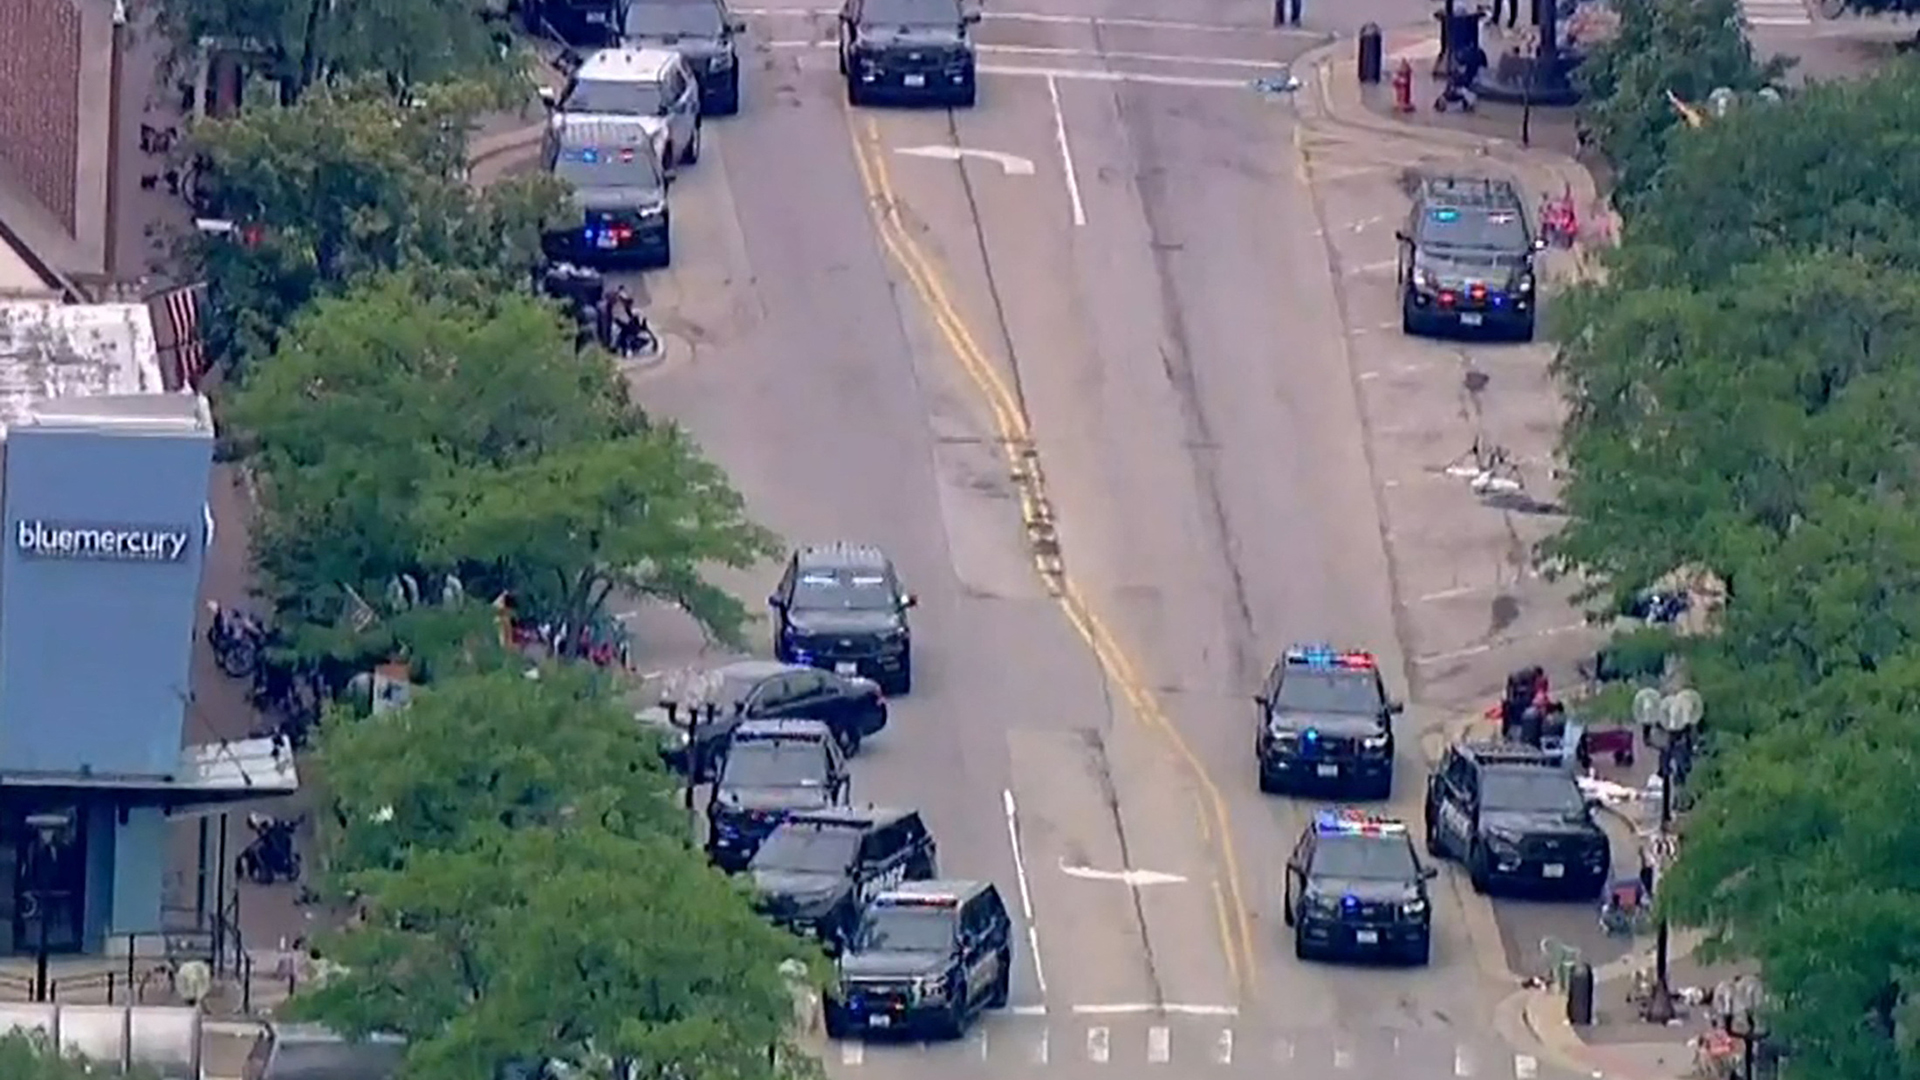 Luftaufnahme von Polizeiwagen auf einer Straße in einem Vorort von Chicago